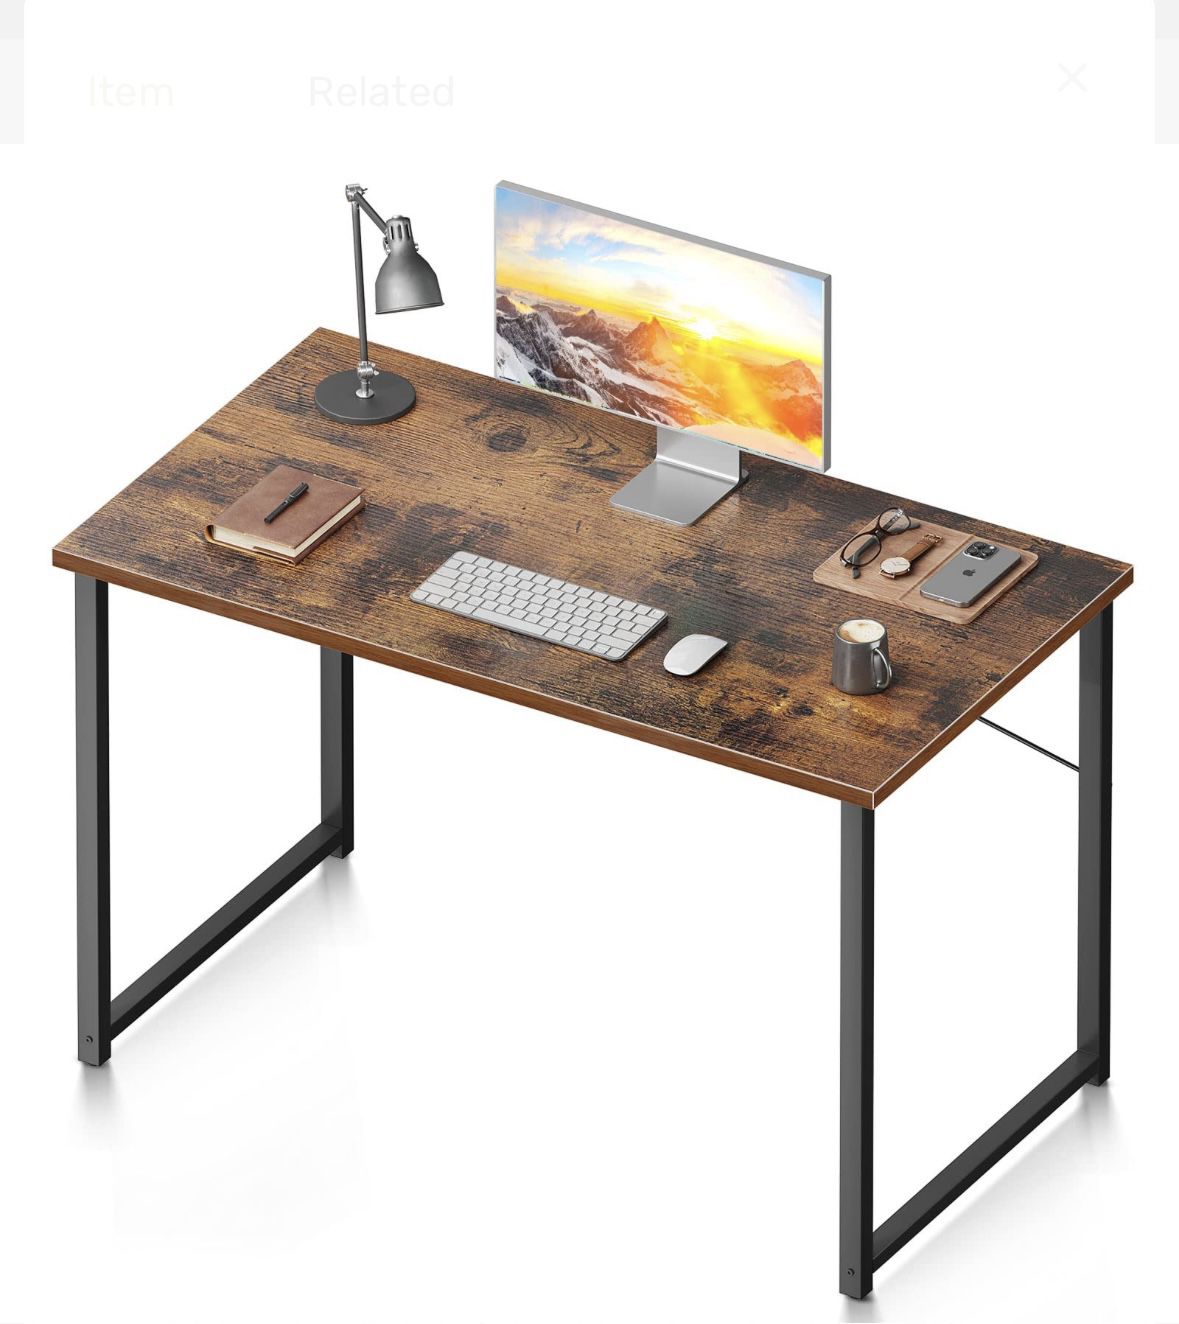 Coleshome Computer Desk 40 inch